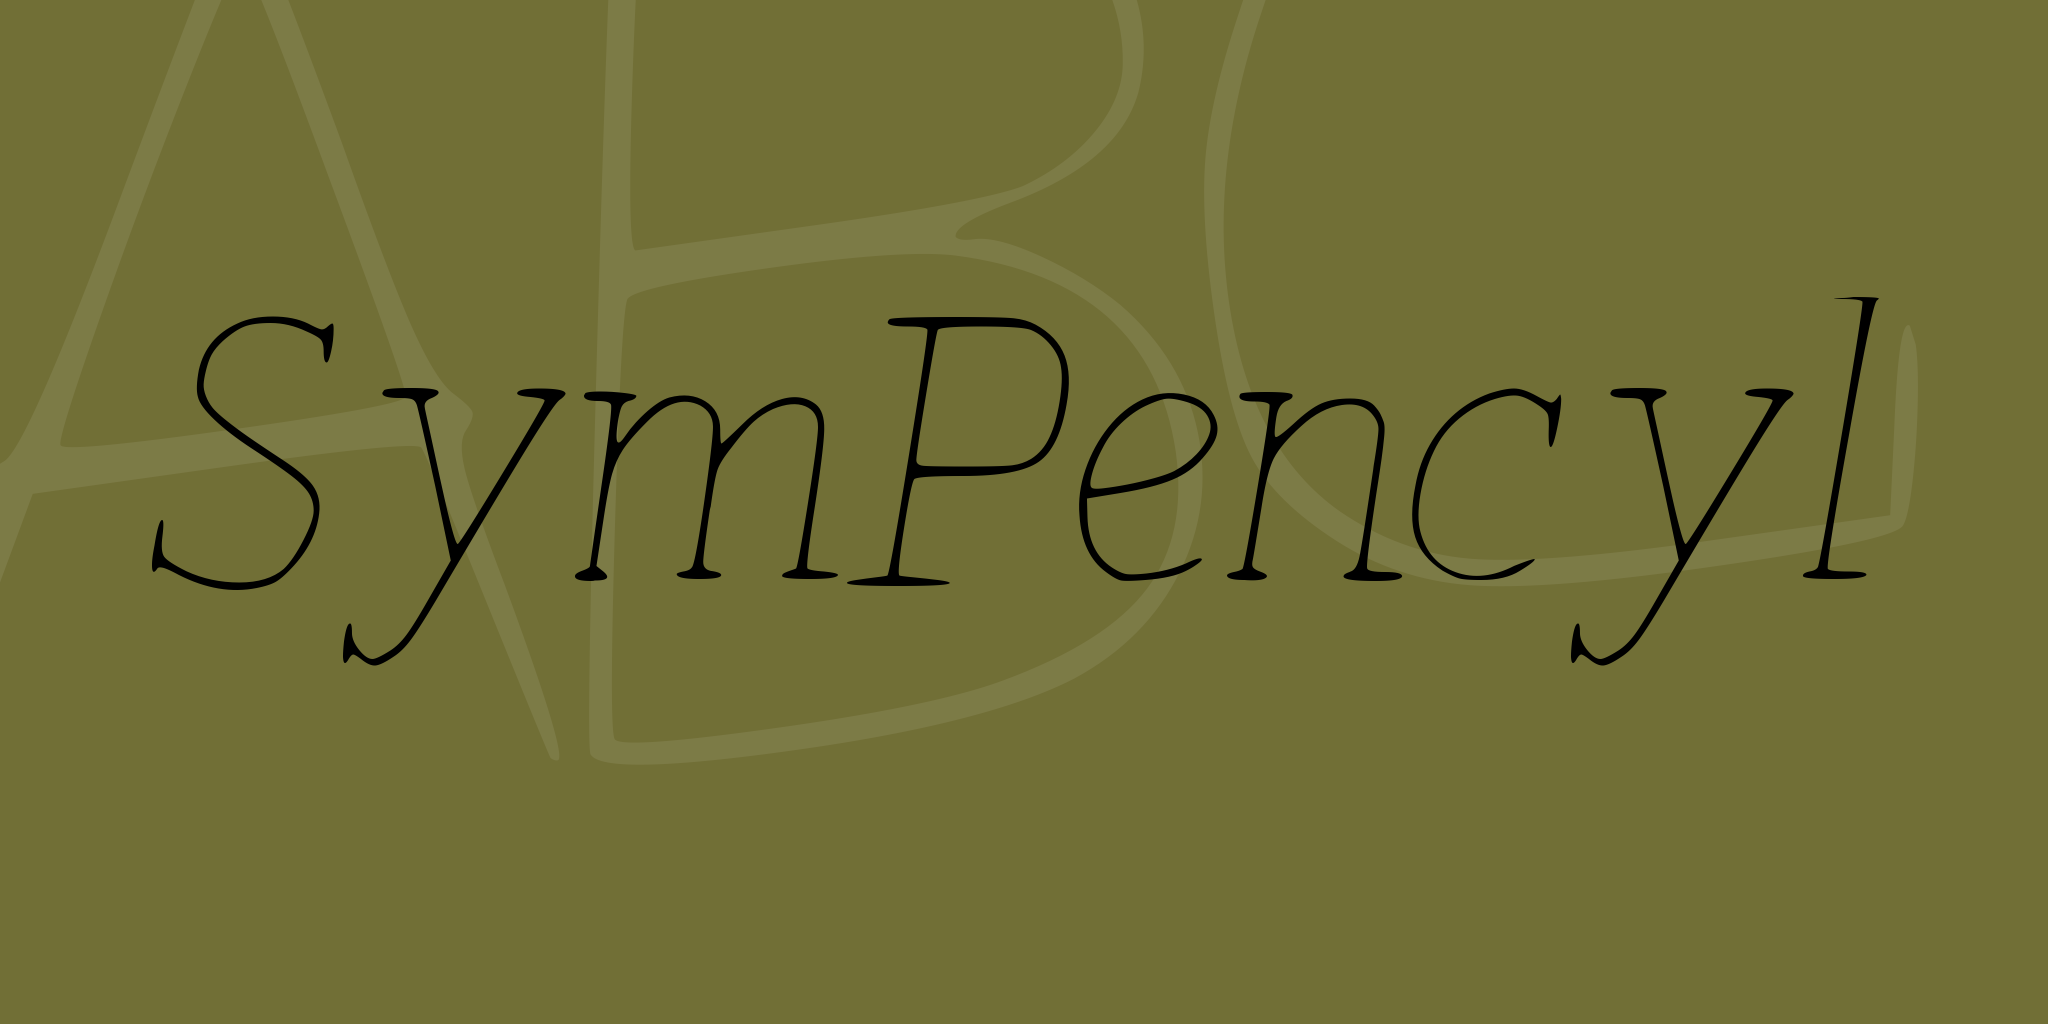 Sym Pencyl